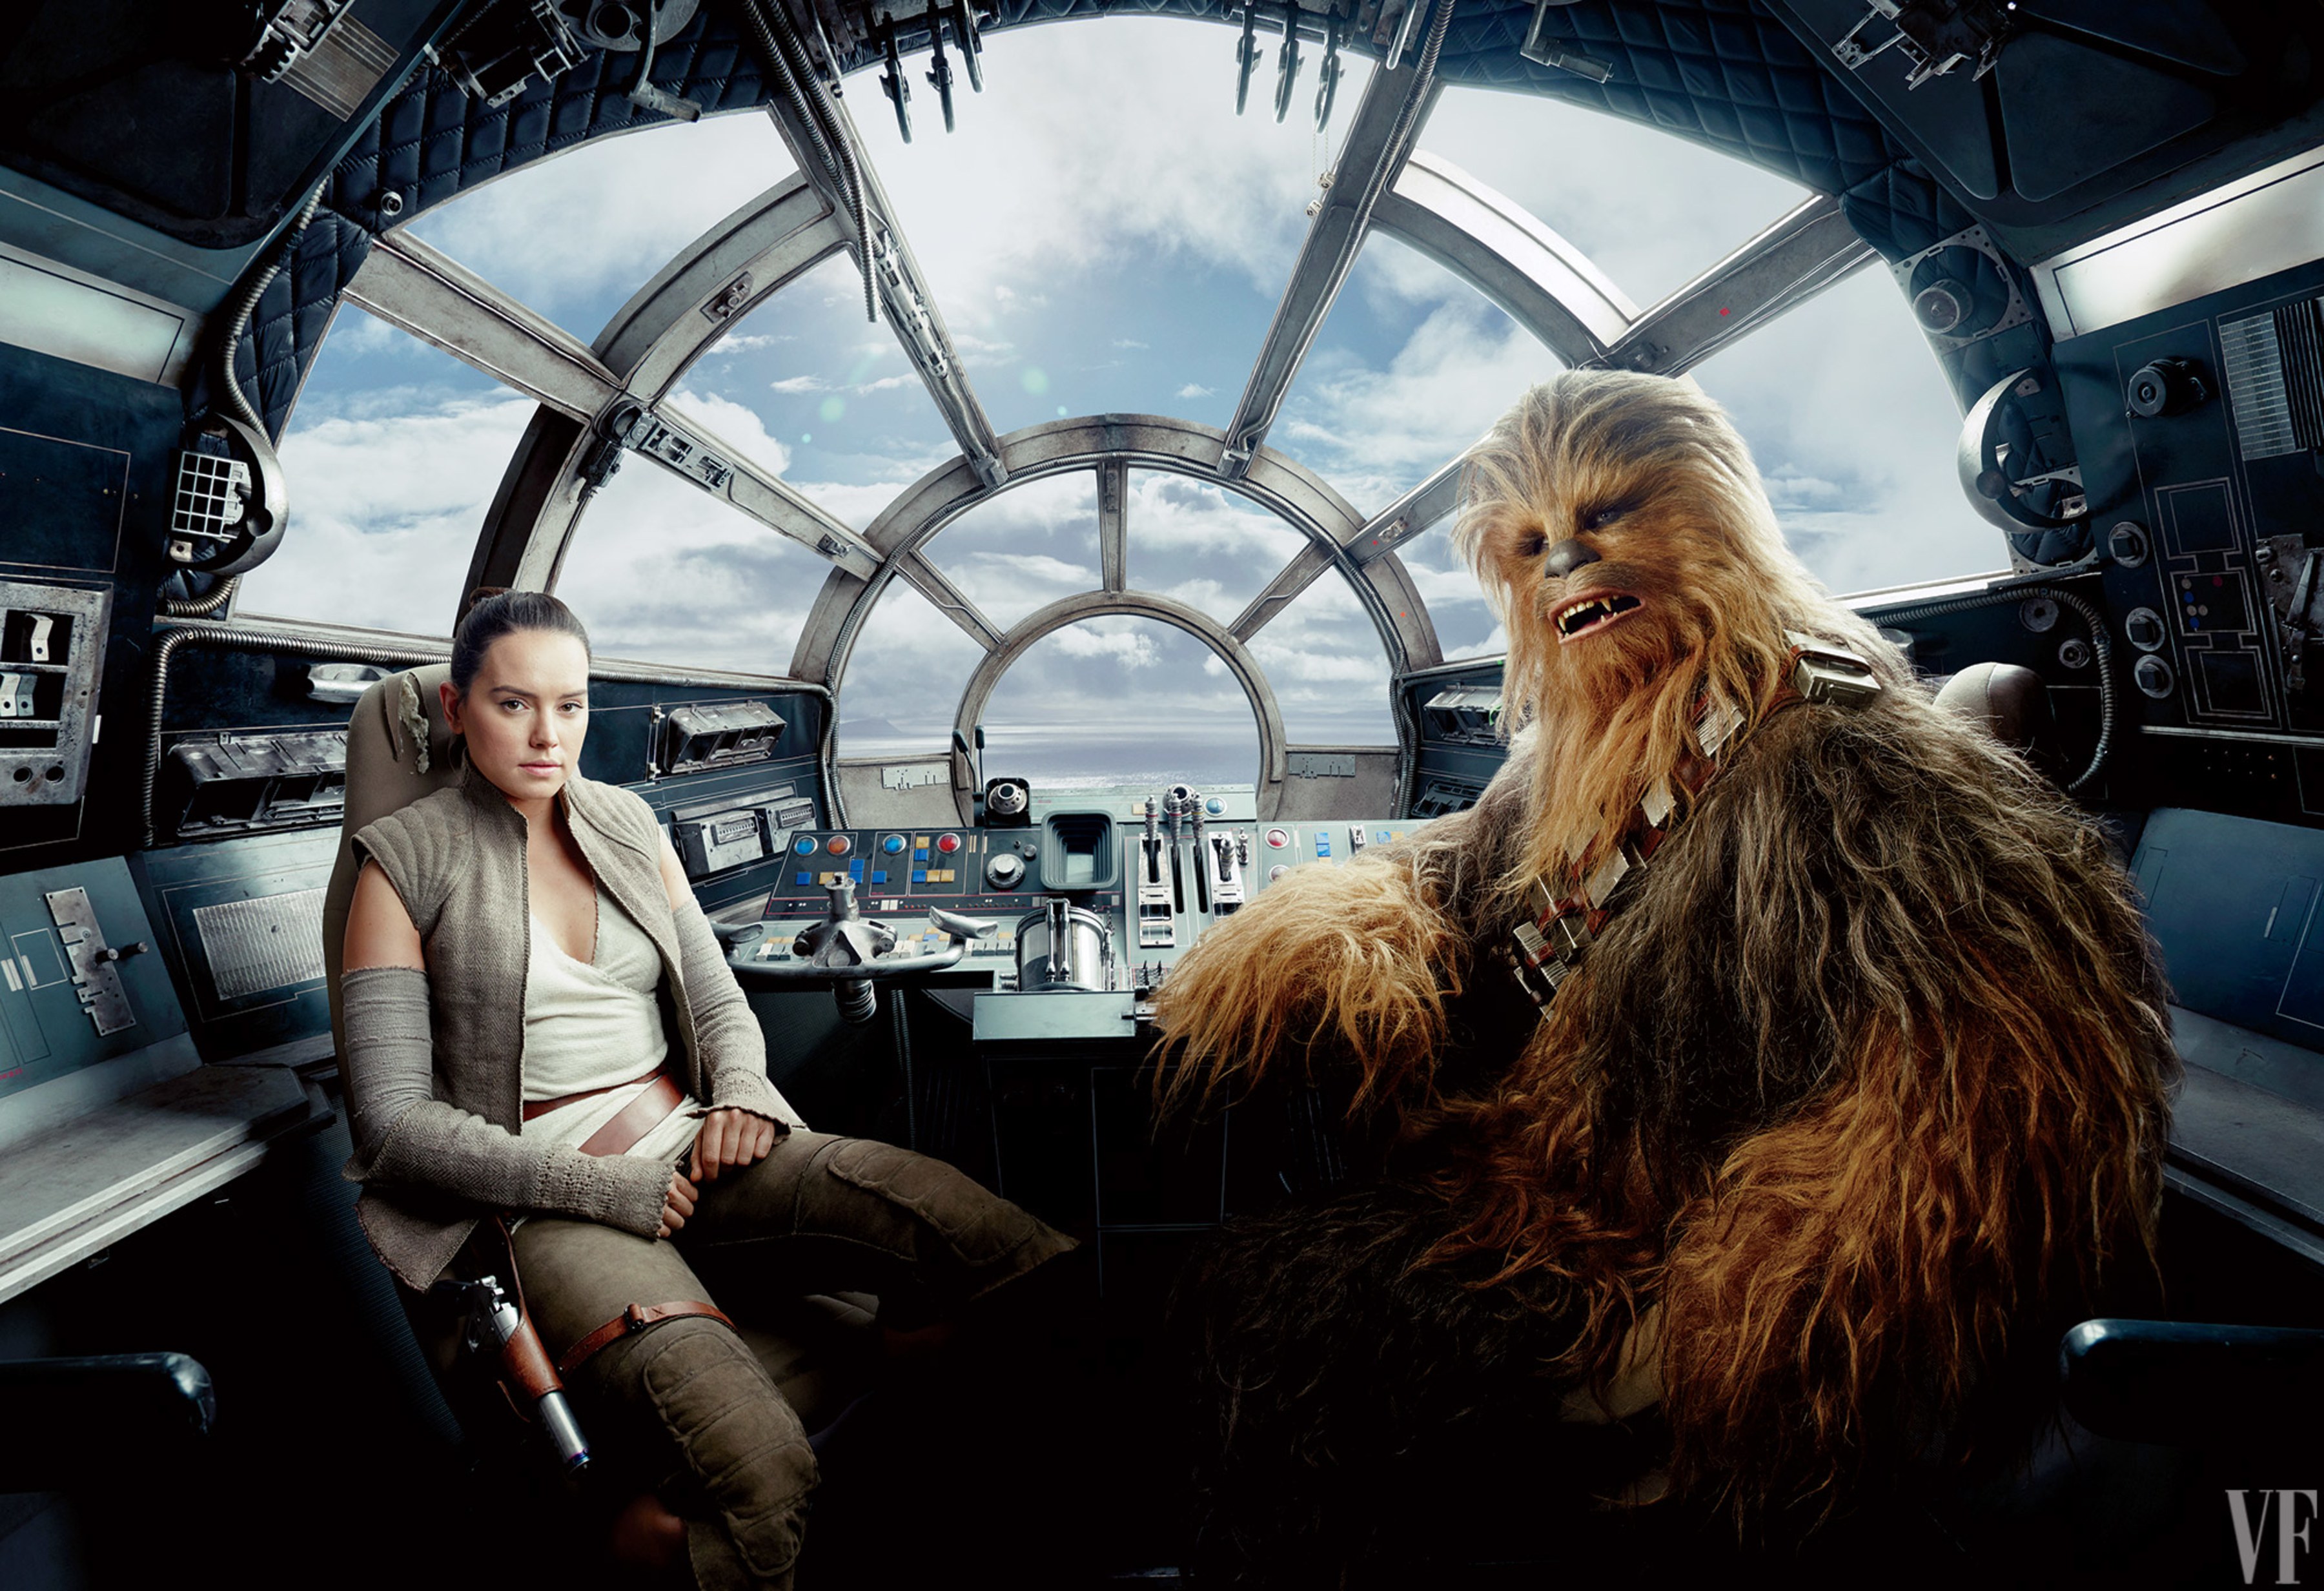 Chewbacca In The Last Jedi - HD Wallpaper 